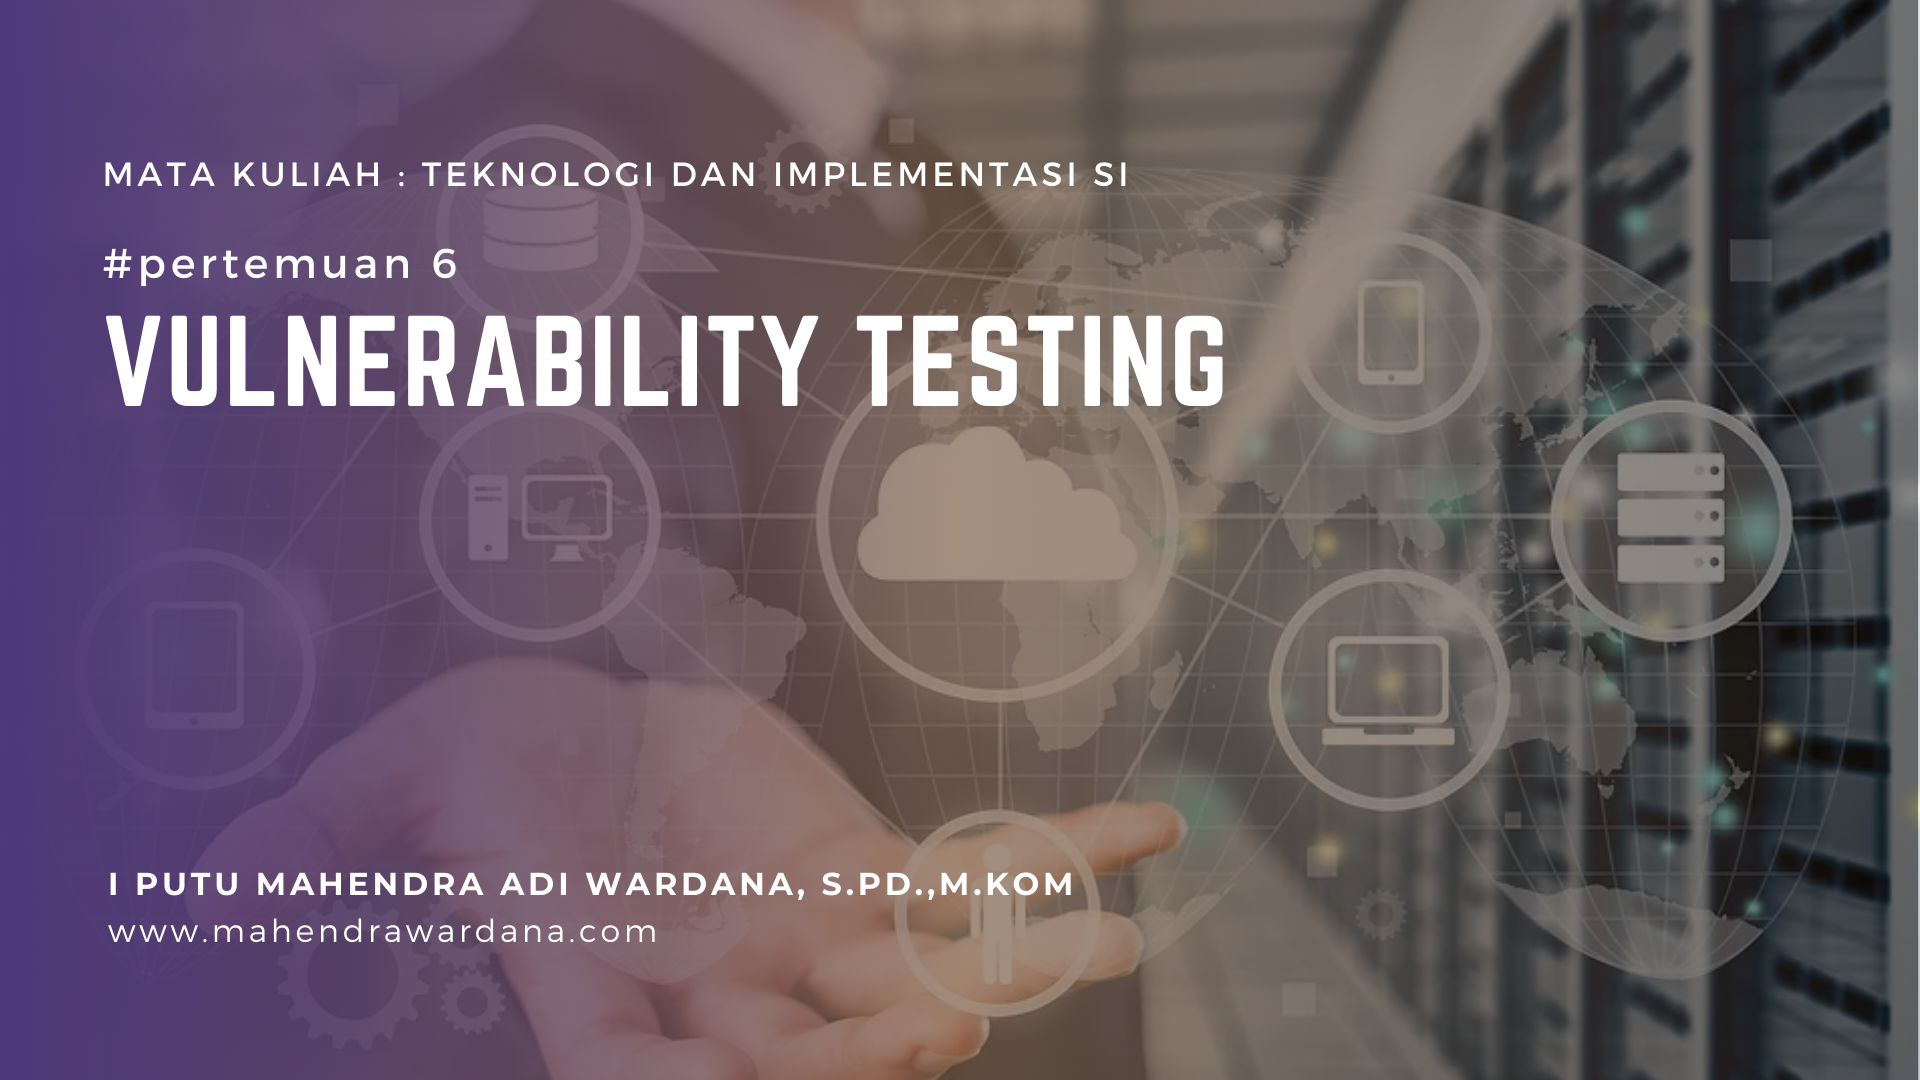 Pertemuan 6 - Vulnerability Testing